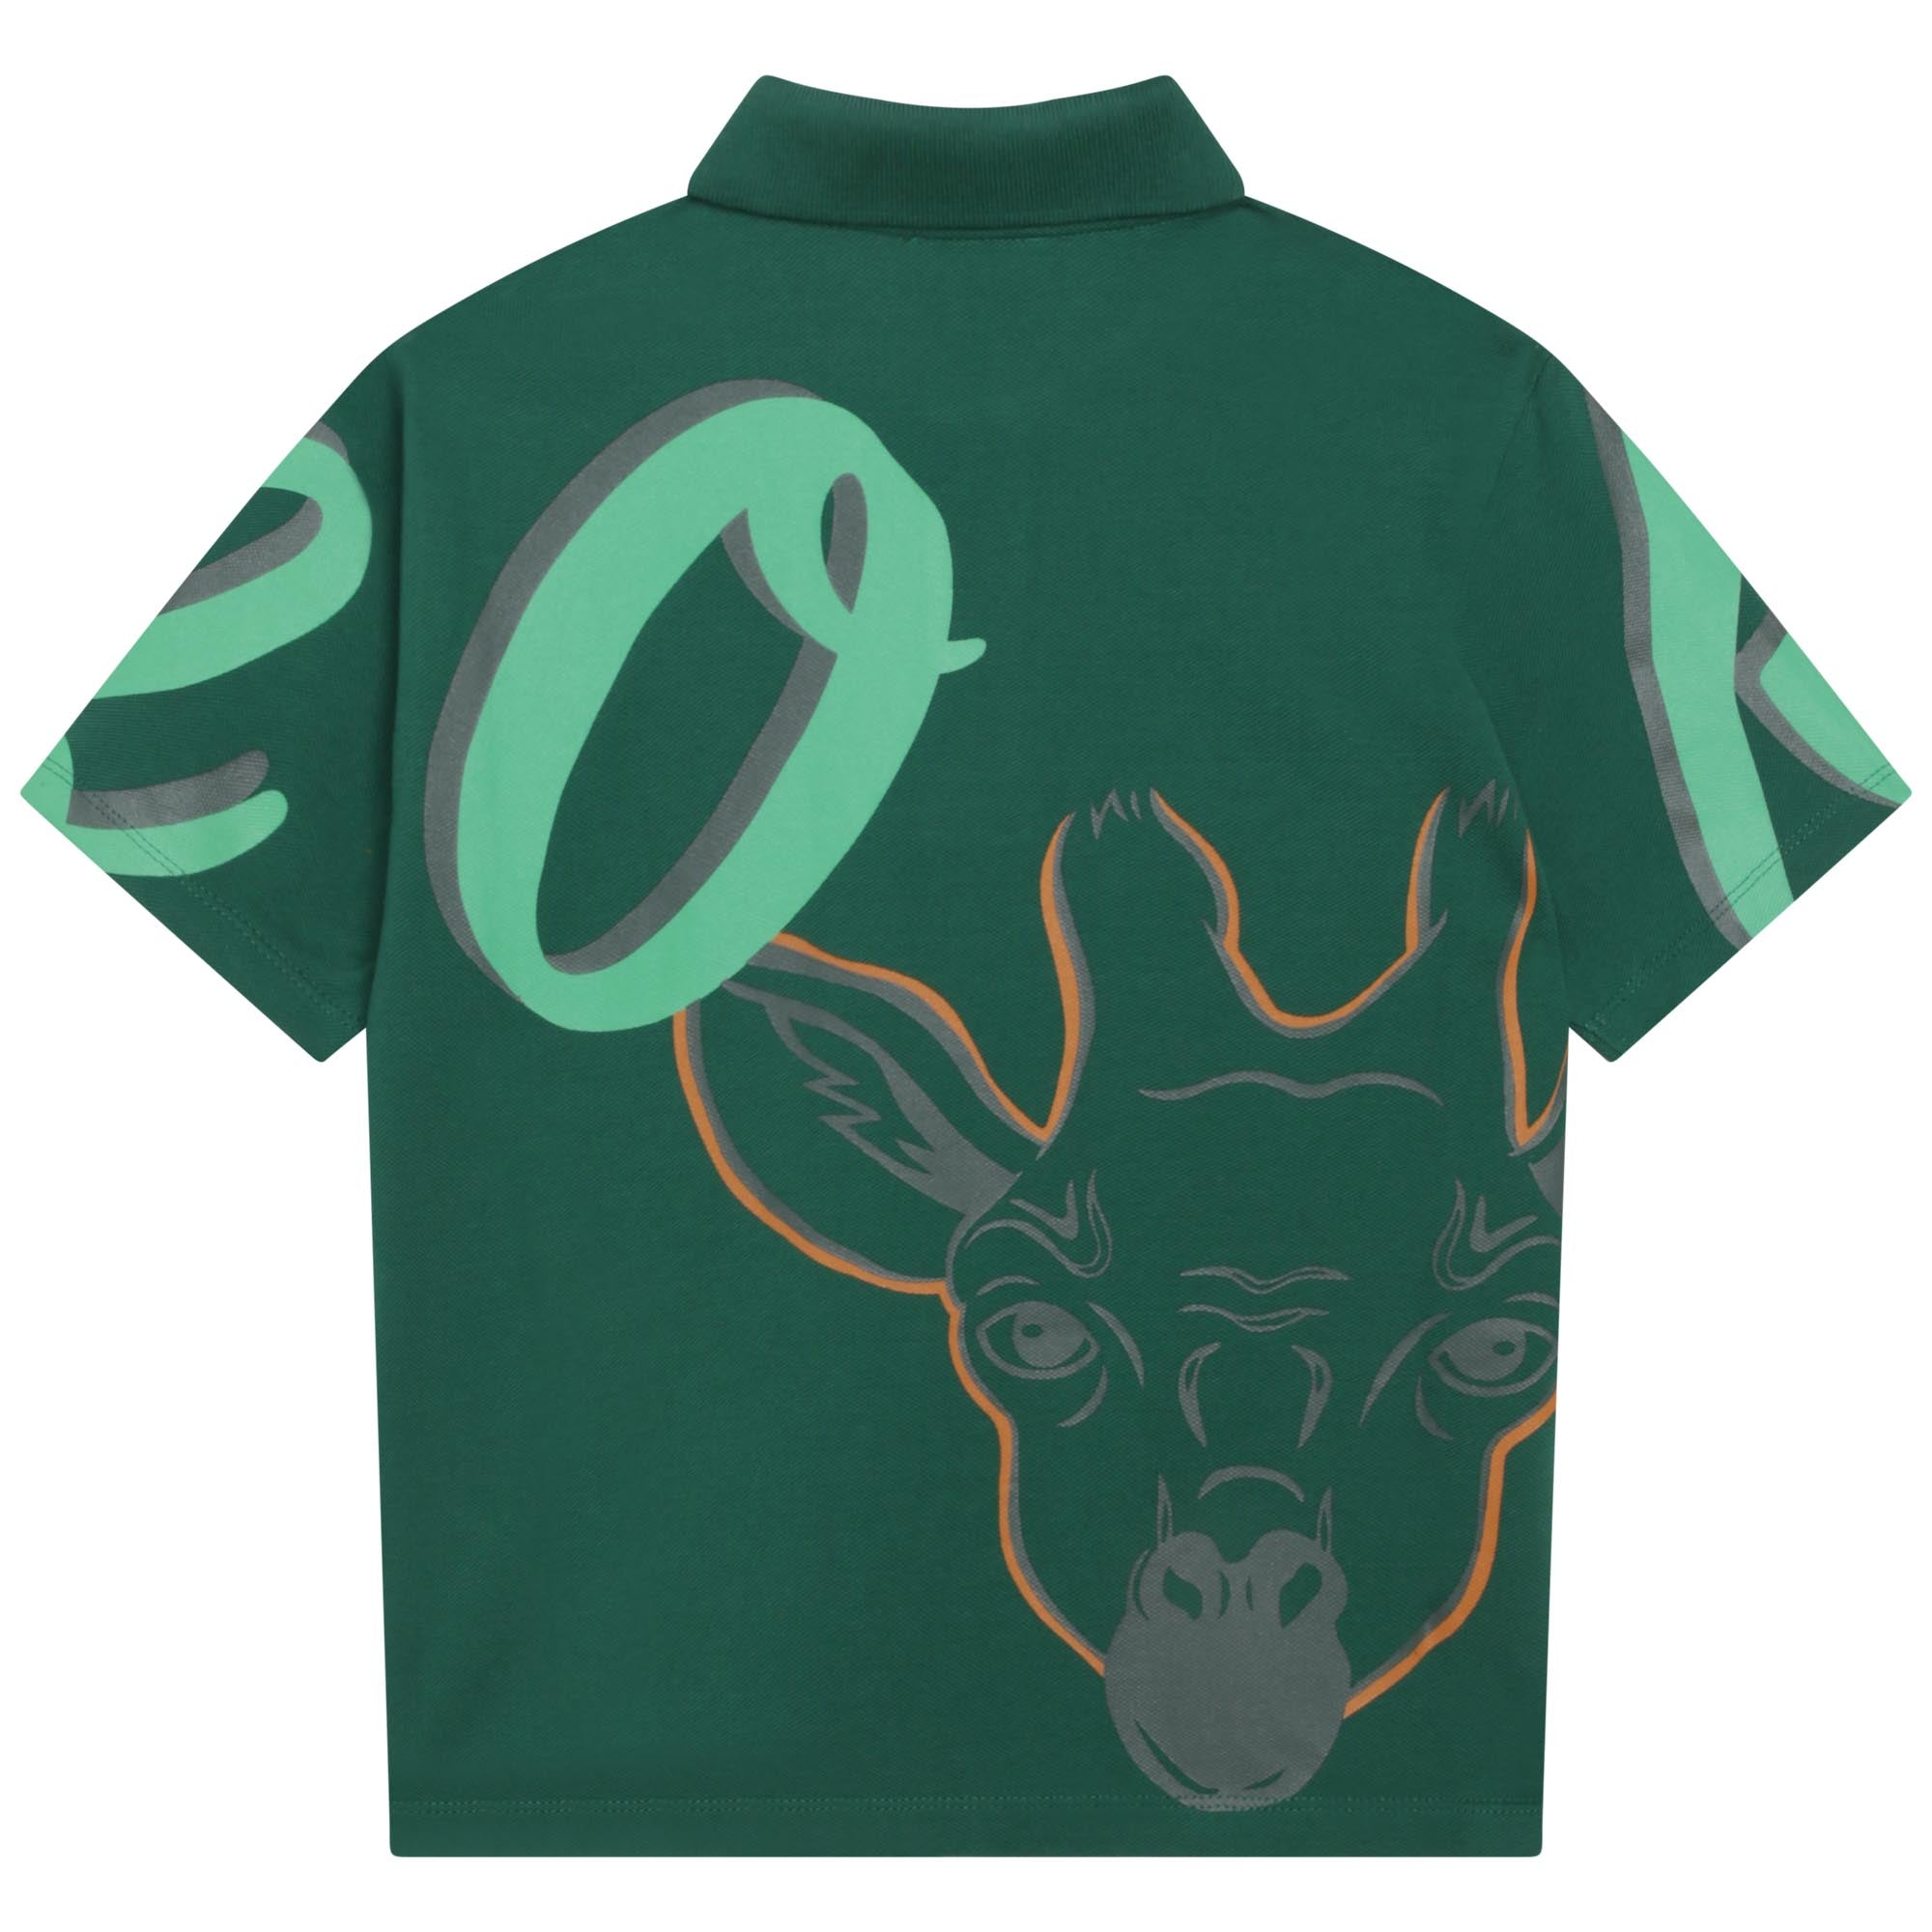 Boys Green Printed Cotton Polo Shirt